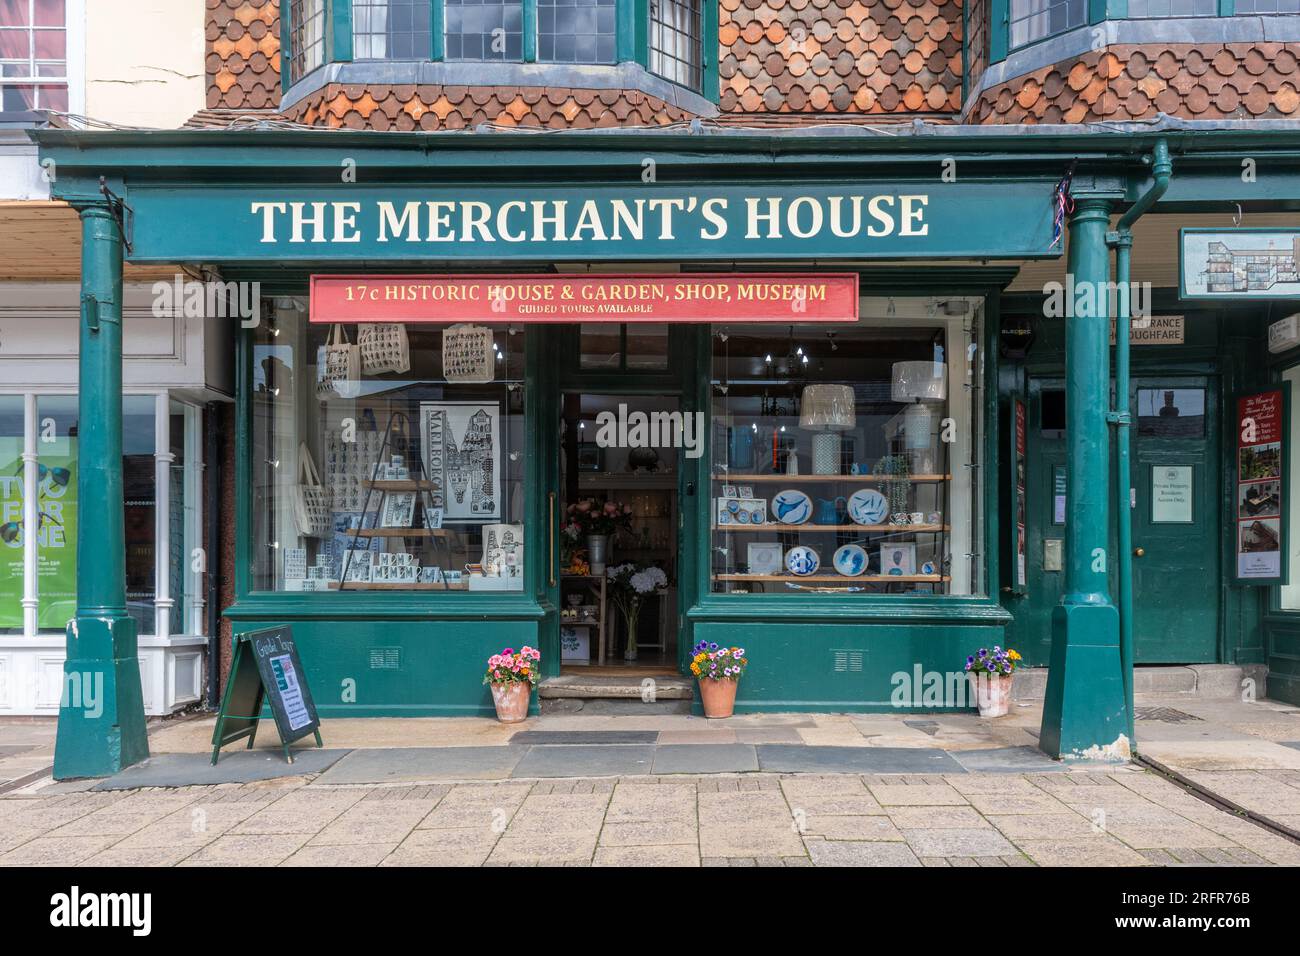 La Merchain’s House, un bâtiment du 17e siècle maintenant un musée, une boutique et une attraction touristique à Marlborough, Wiltshire, Angleterre, Royaume-Uni Banque D'Images